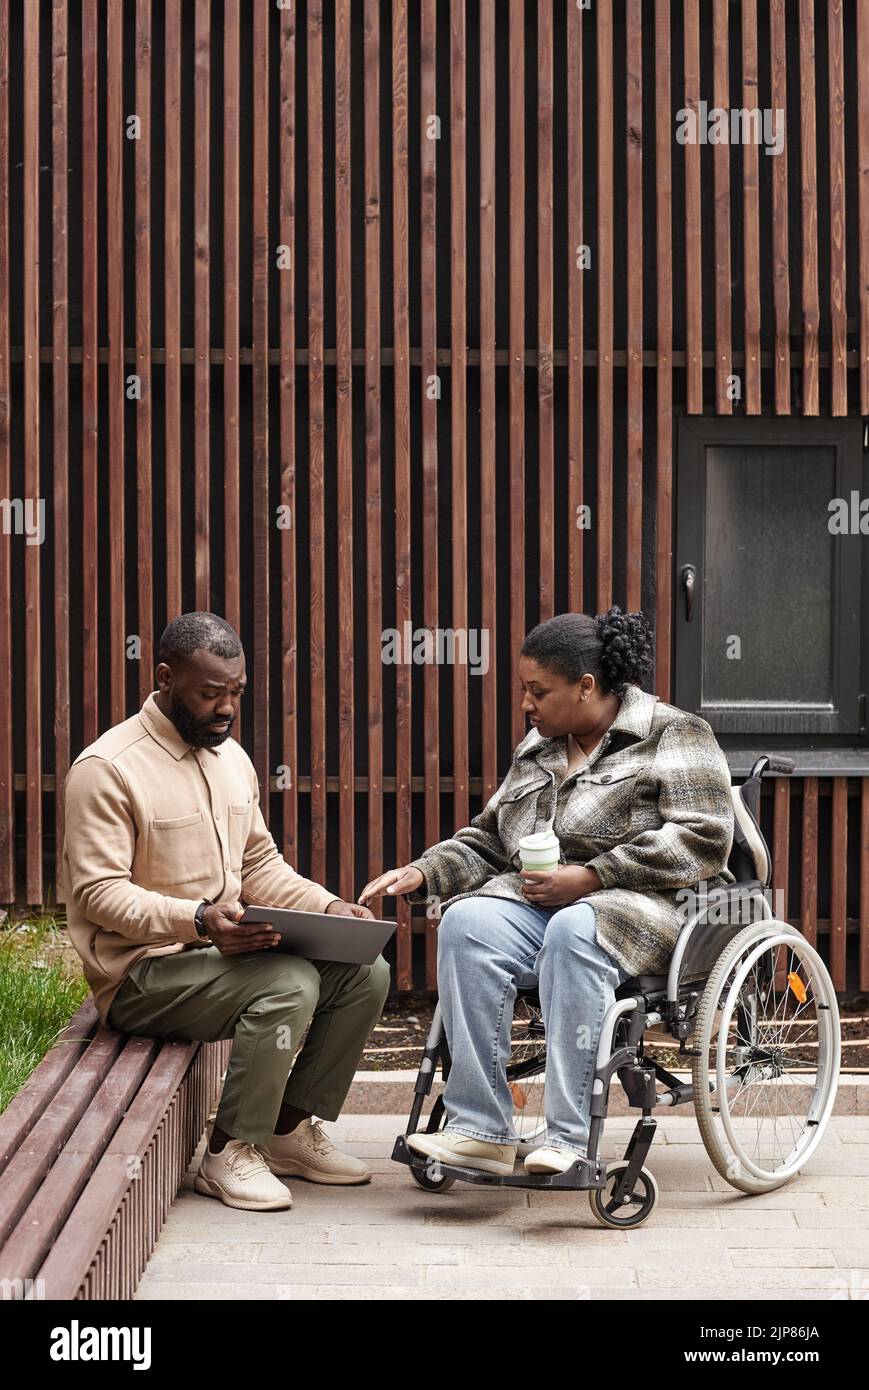 Plano vertical completo de una mujer joven en silla de ruedas hablando con un amigo o colega al aire libre en el parque de la ciudad, espacio de copia Foto de stock